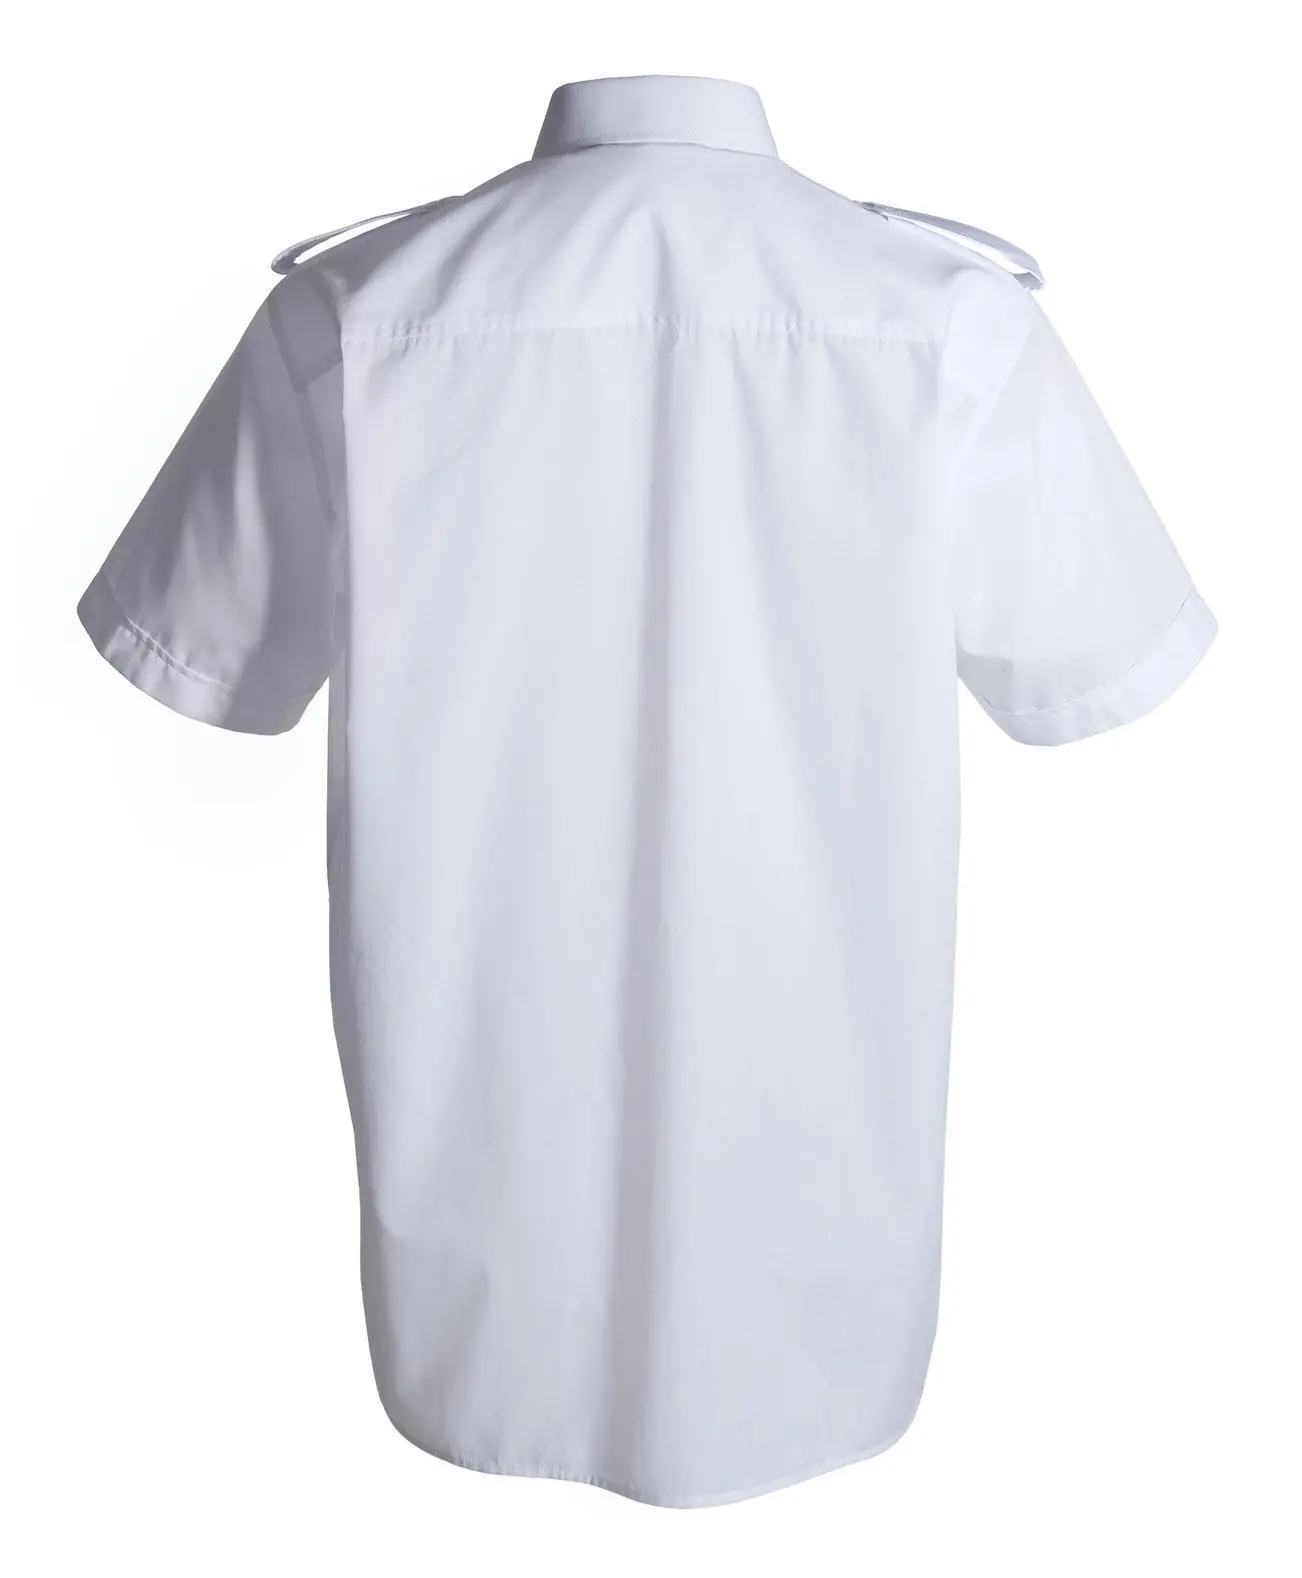 Schützenhemd - Pilotenhemd Kurzarm weiß